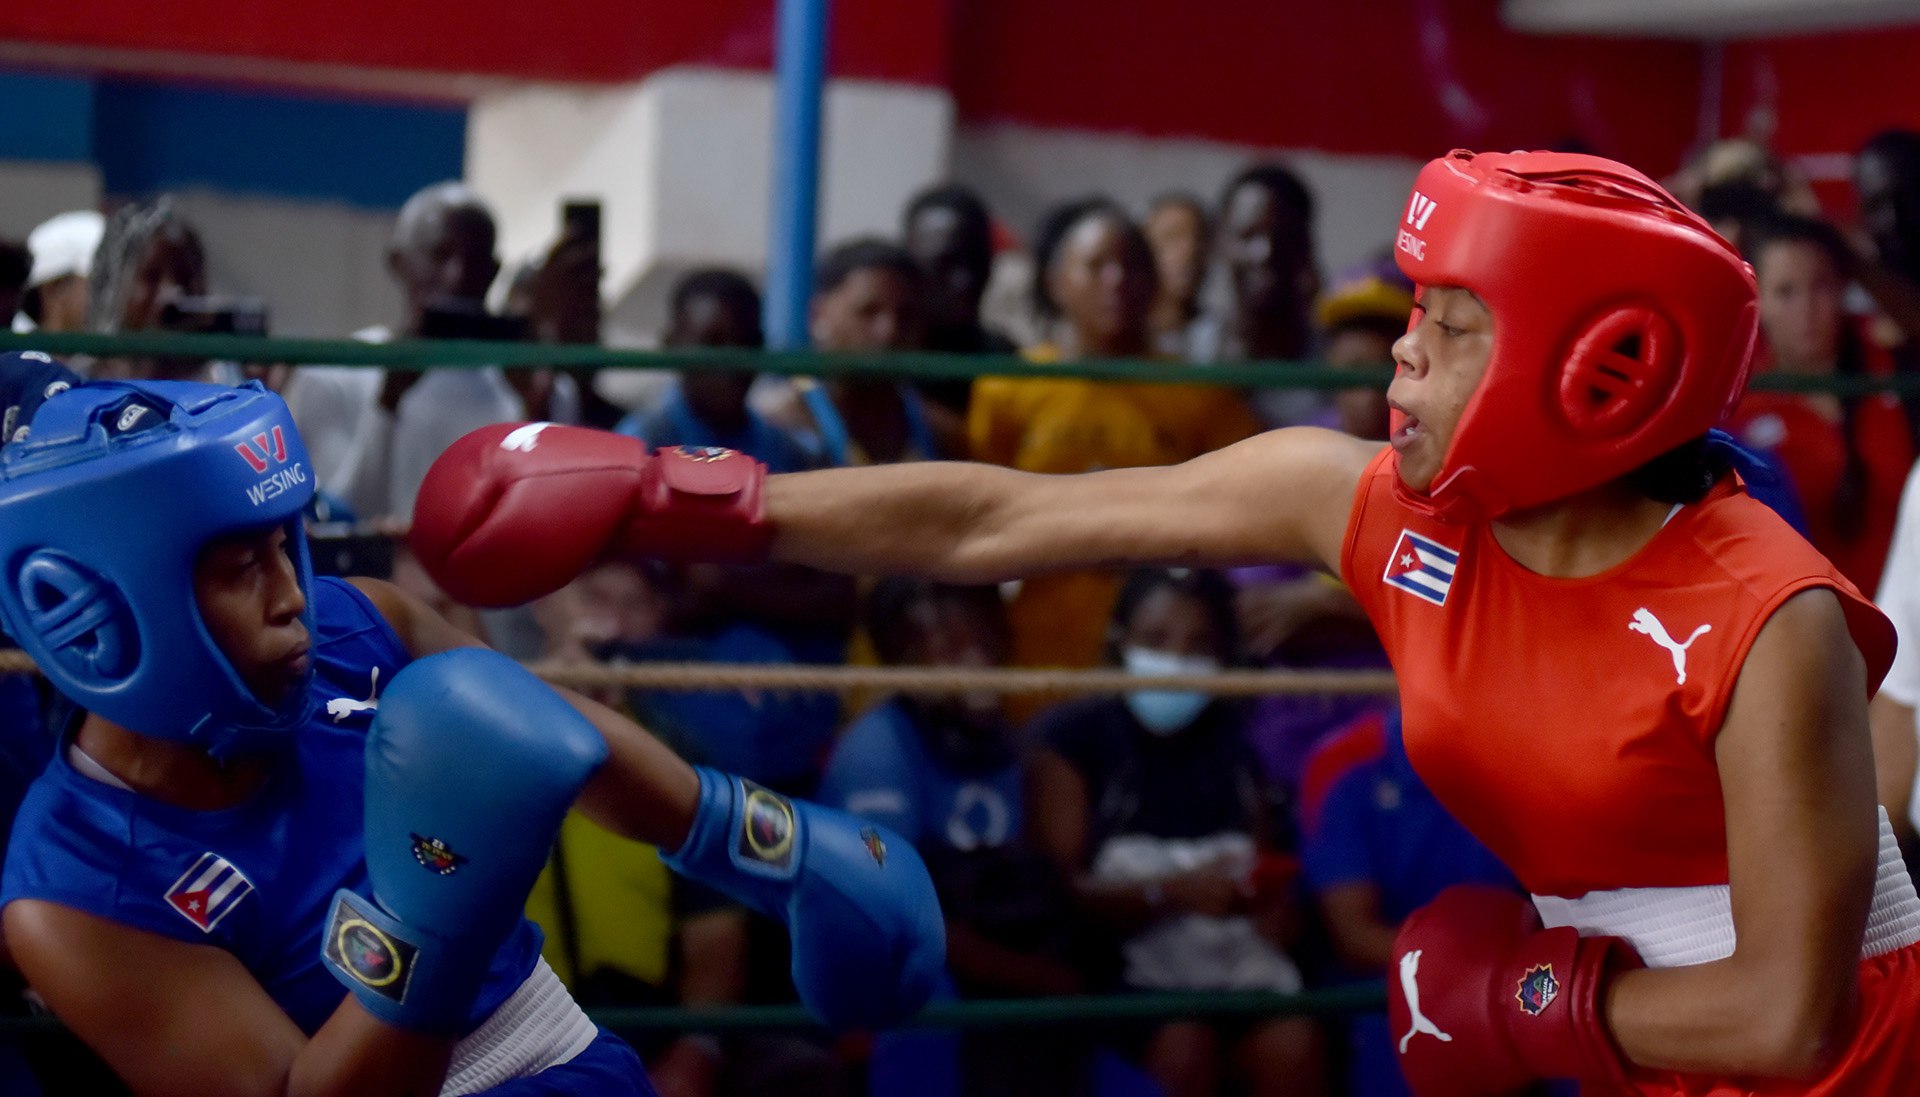 El boxeo femenino en Cuba ha dado un importante paso. Tras años de espera, las cubanas finalmente tienen la oportunidad de demostrar su talento. Foto: Omara García / Agencia cubana de noticias